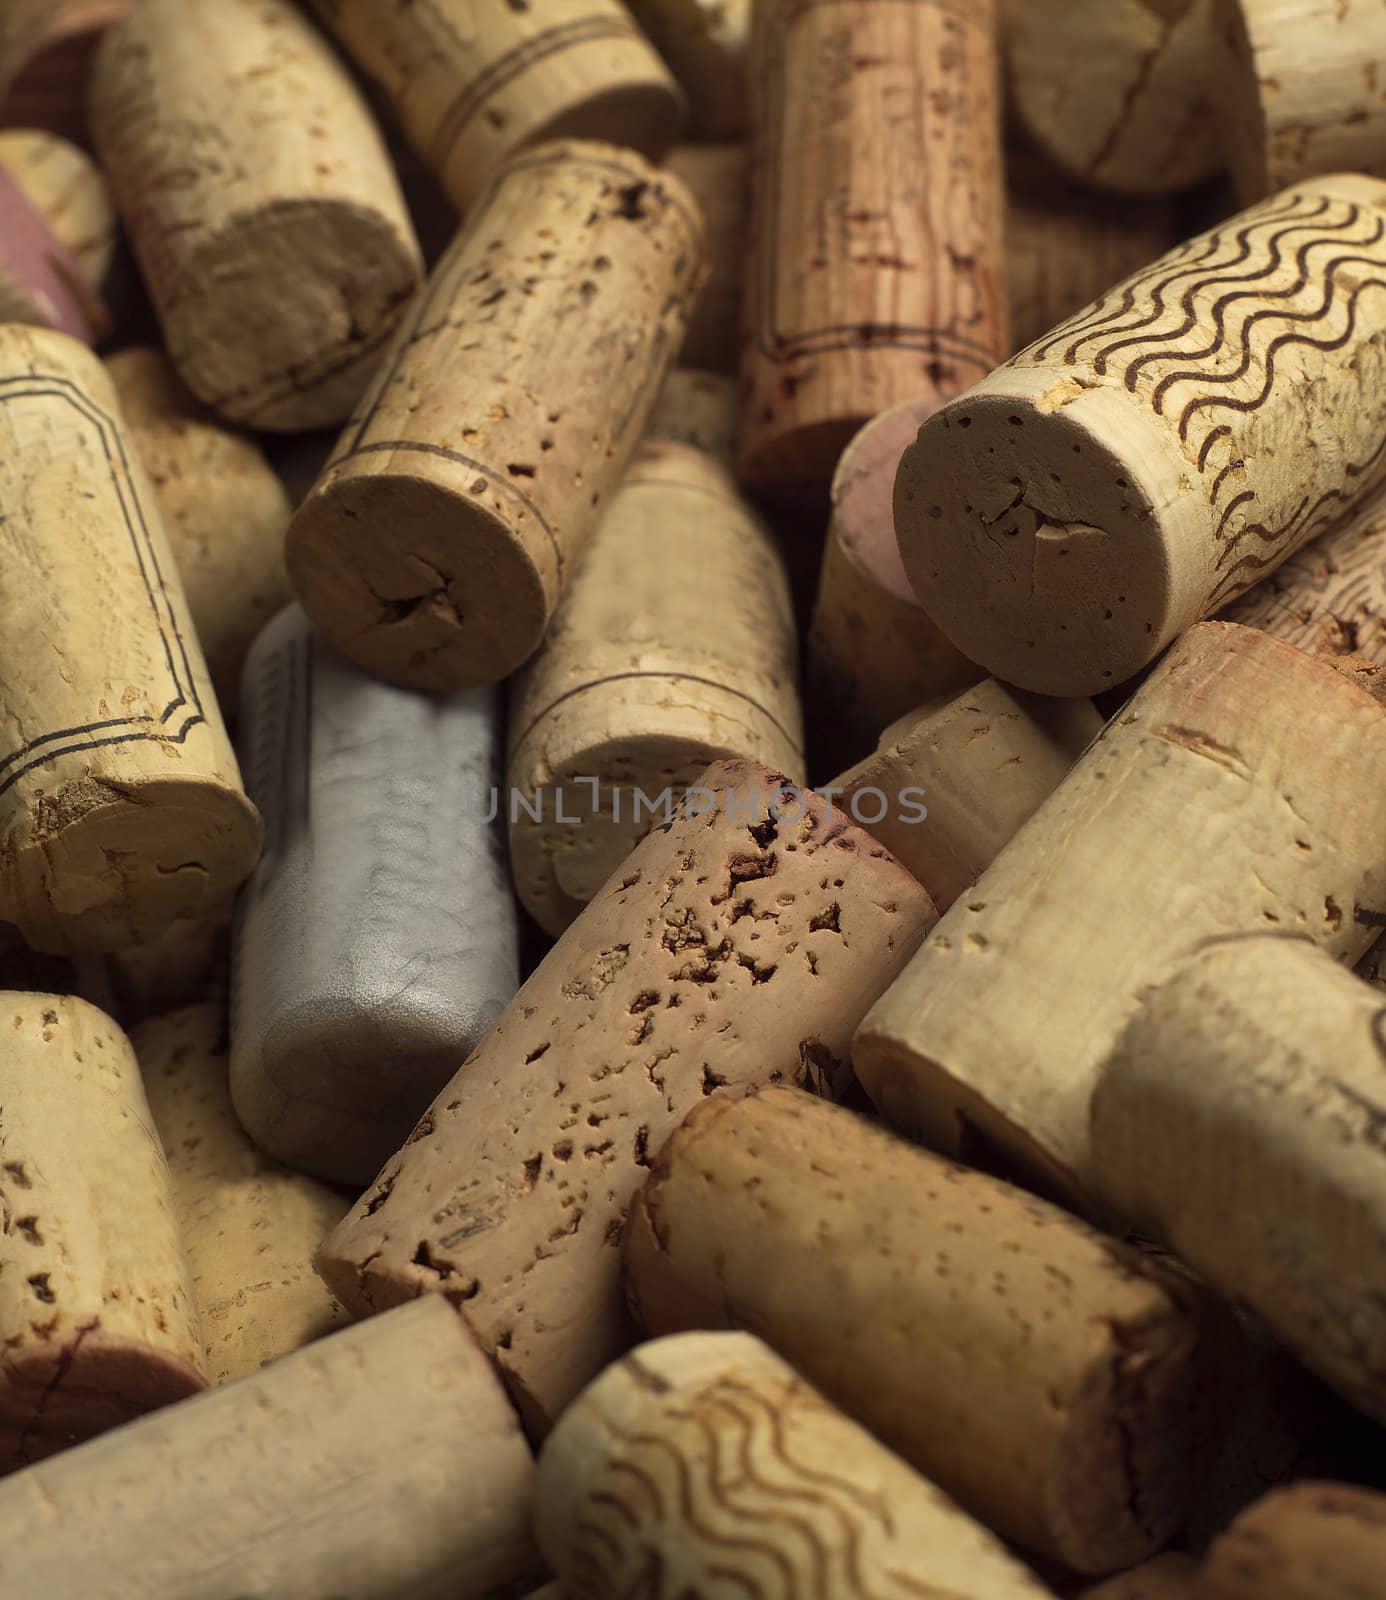 Full Frame of Wine corks